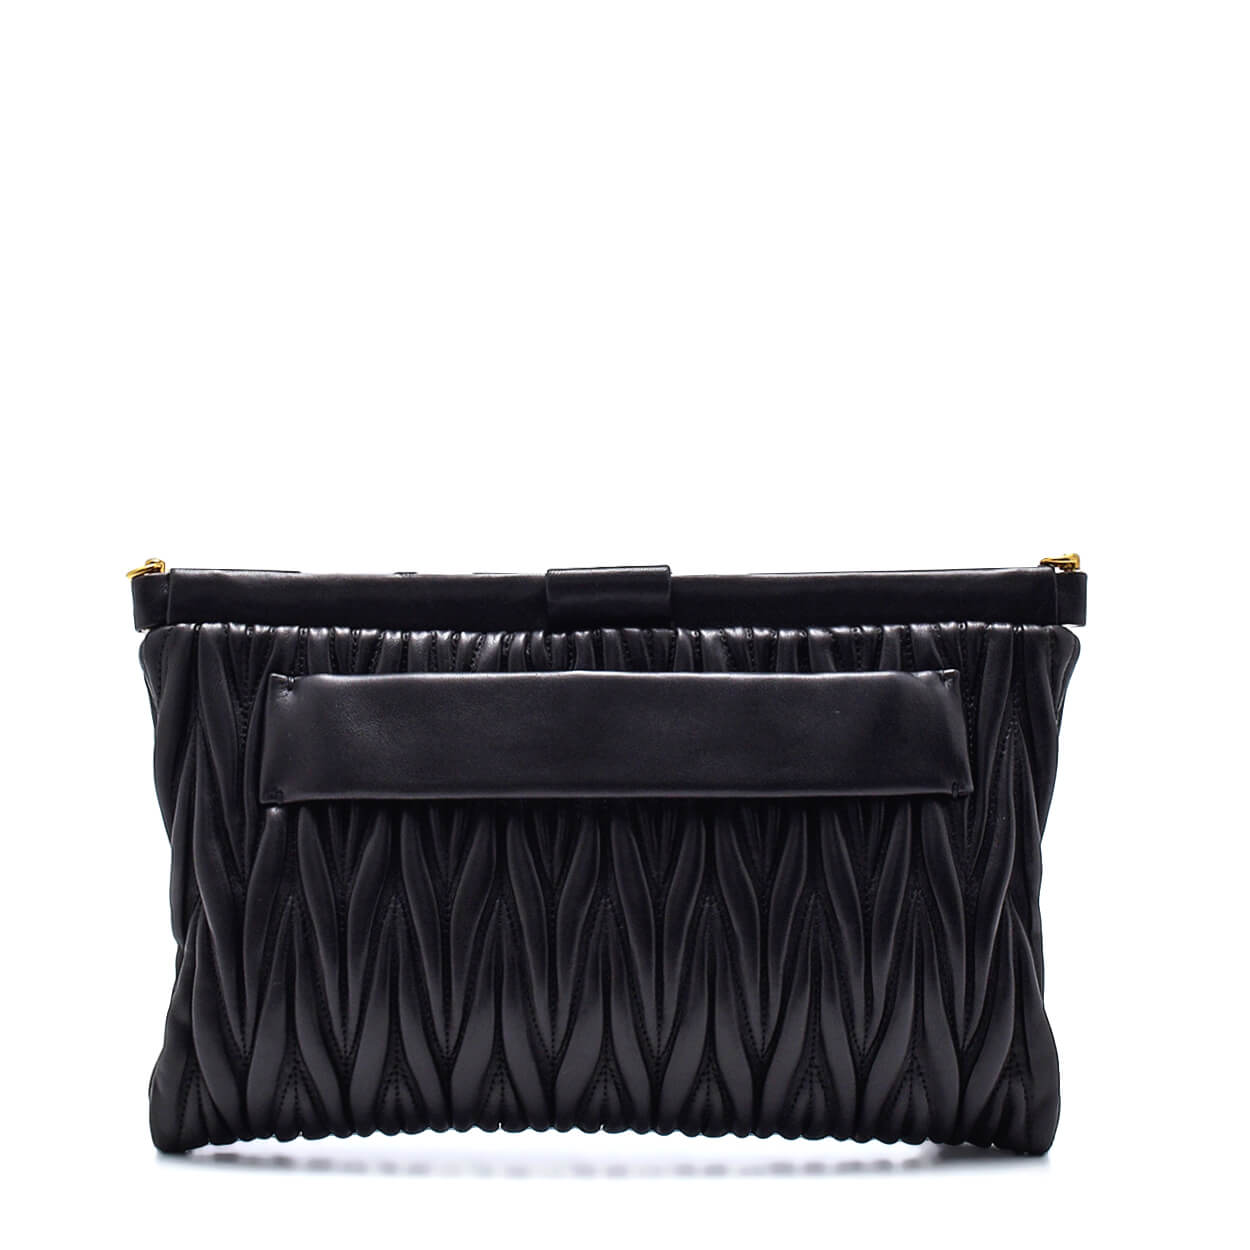 Miu Miu - Black Matelasse Leather Clutch Bag